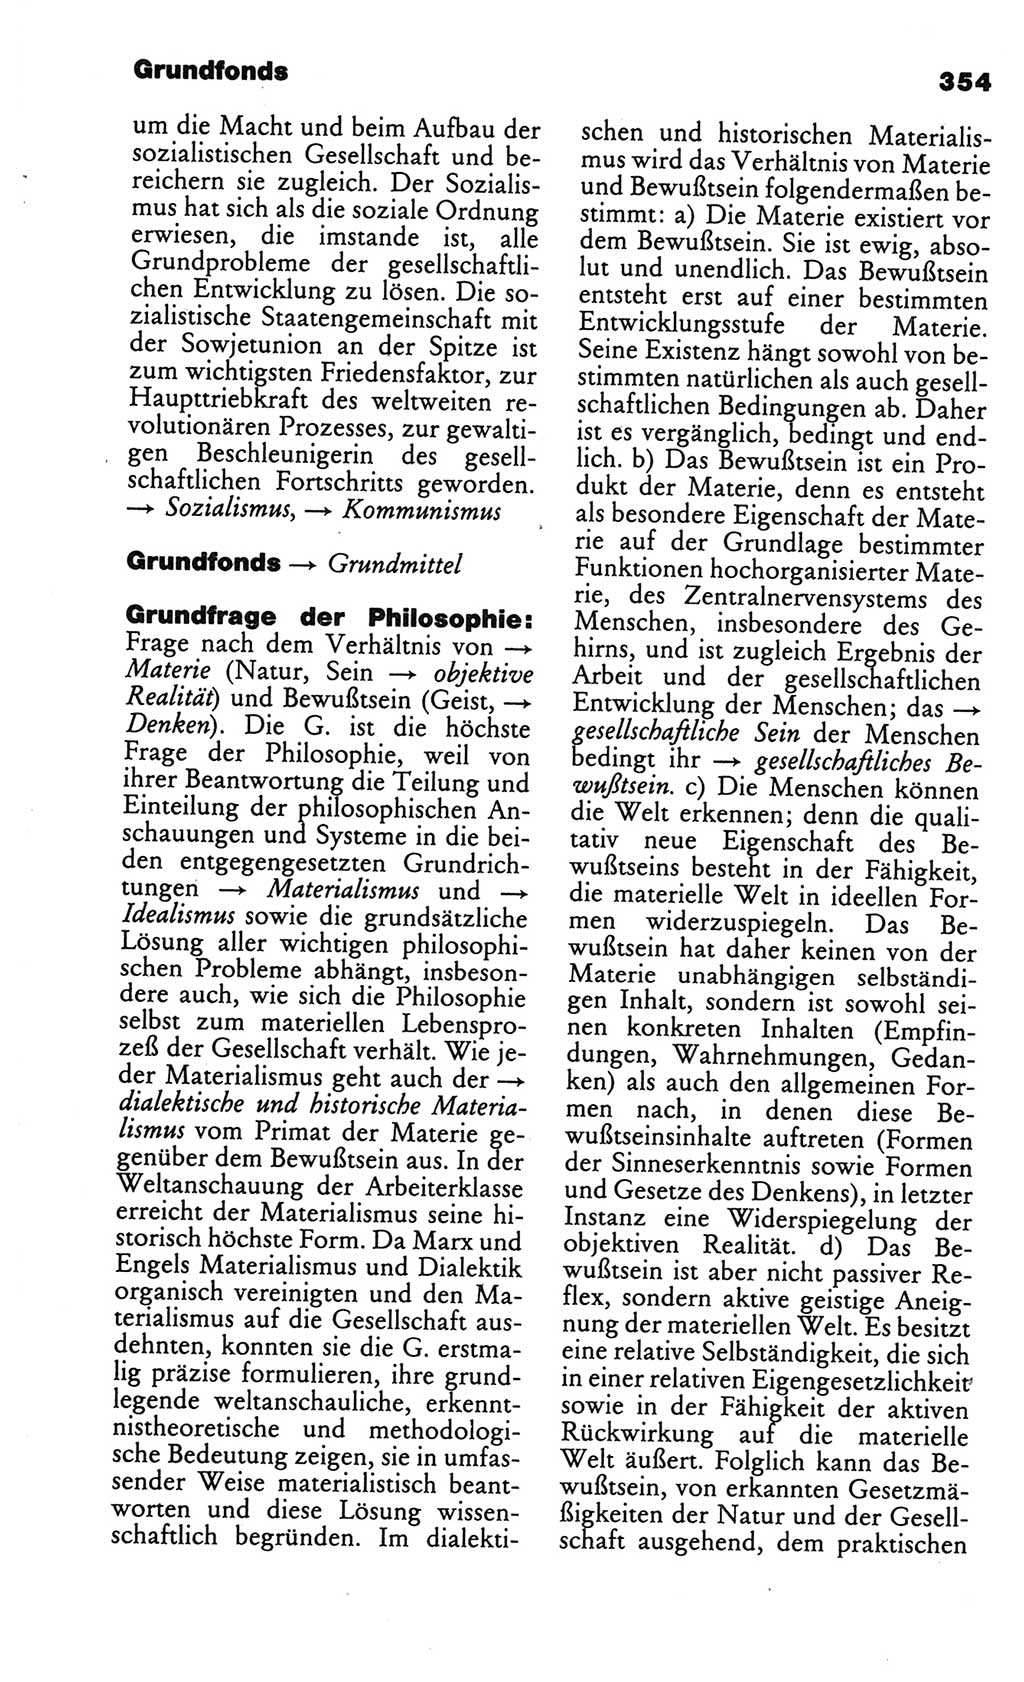 Kleines politisches Wörterbuch [Deutsche Demokratische Republik (DDR)] 1986, Seite 354 (Kl. pol. Wb. DDR 1986, S. 354)